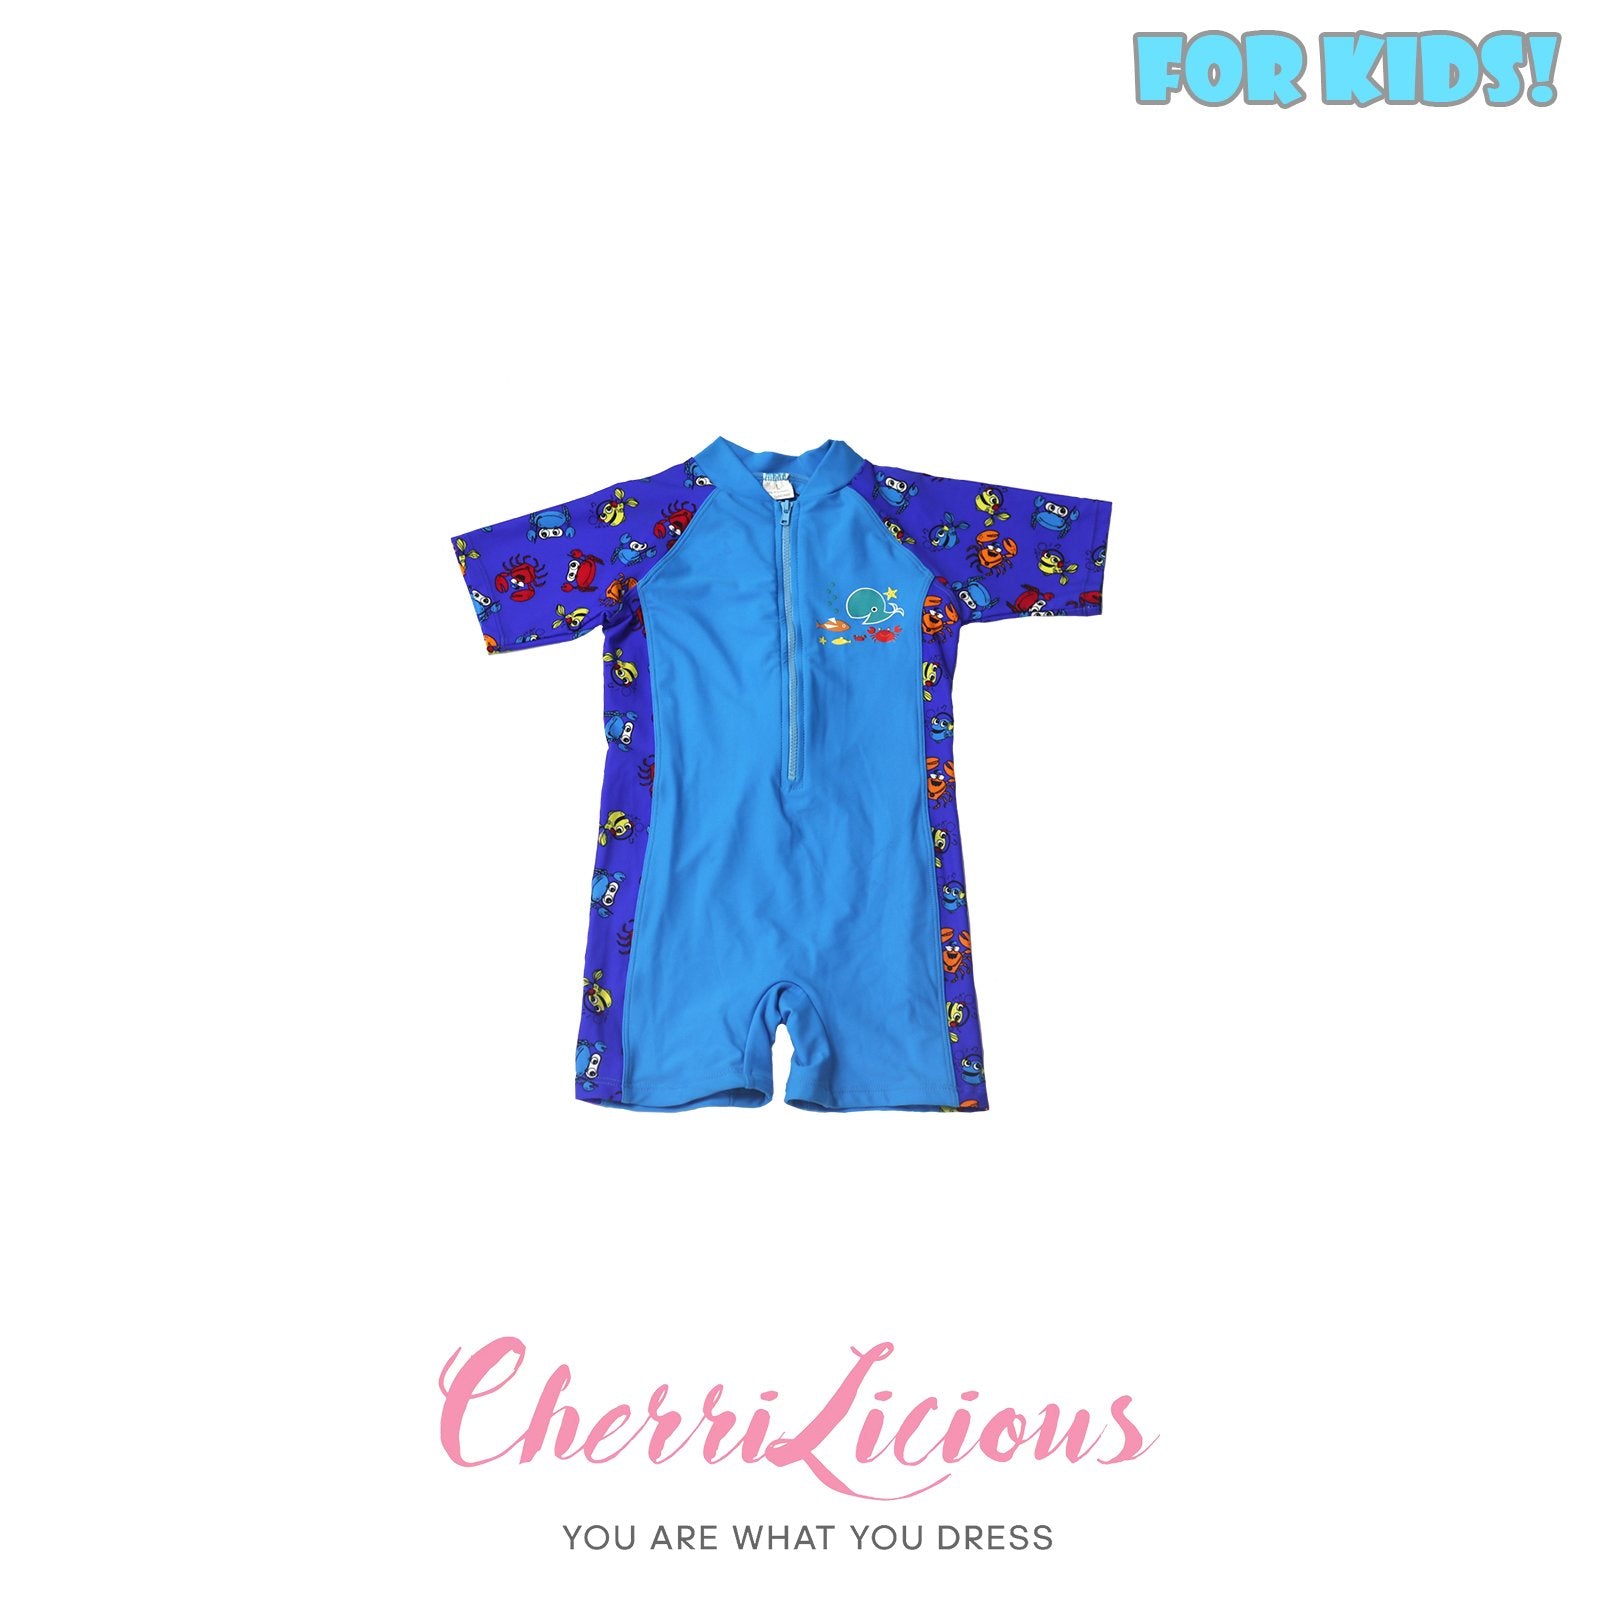 【FOR KIDS】Swimwear for KIDS! 拼色 淺藍深藍 海洋生物 男生泳裝  (2-3 years old) Cherrilicious